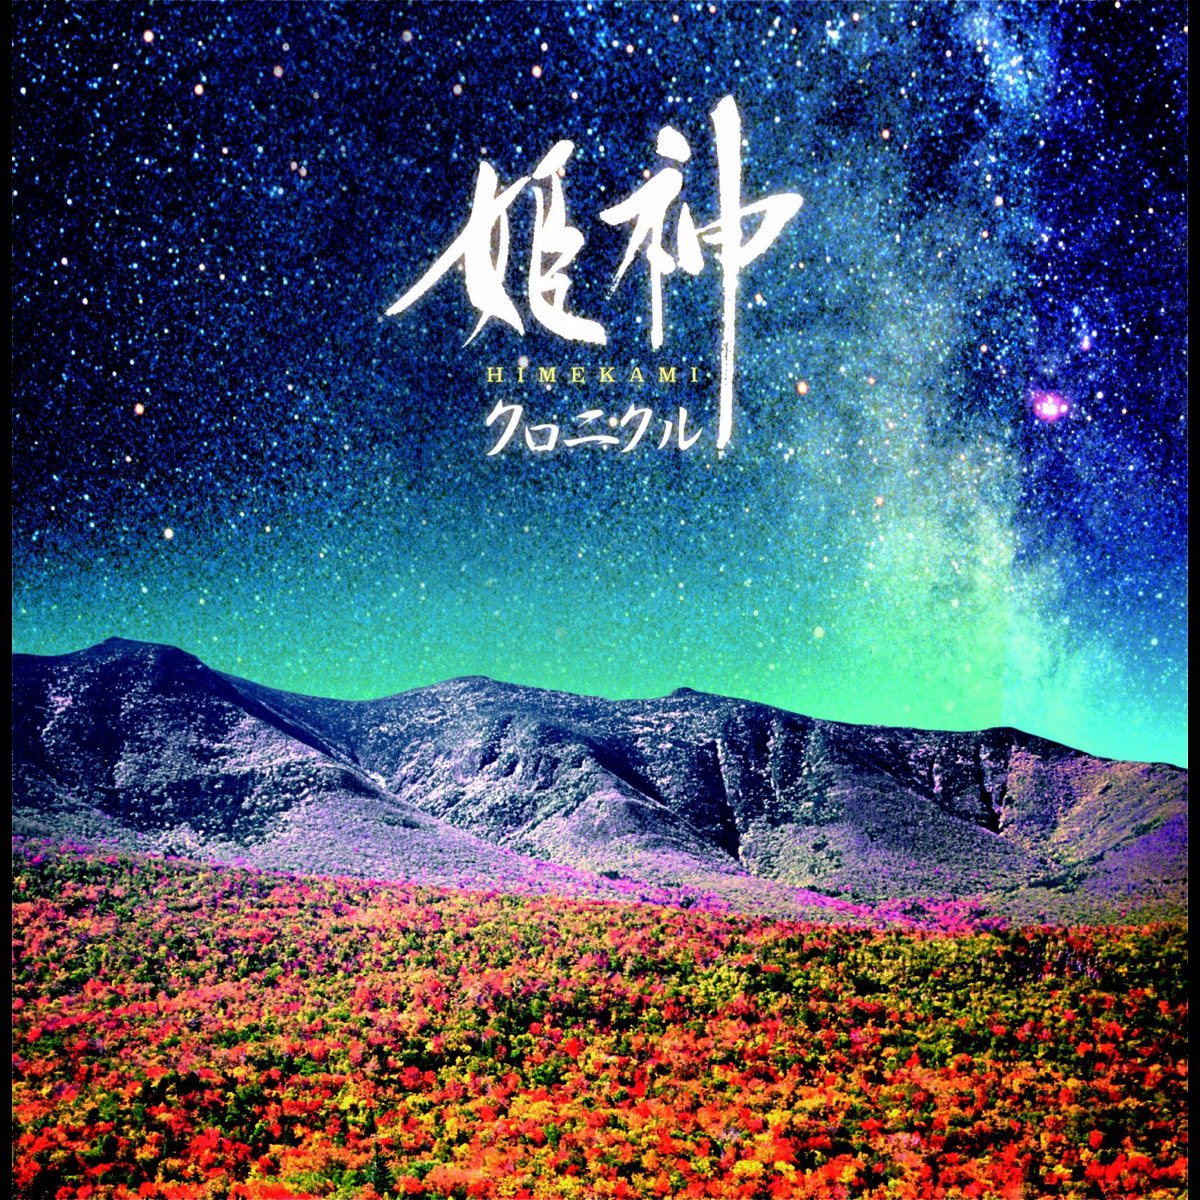 決定盤!!姫神 / クロニクル ベスト - 姫神のアルバム - Apple Music